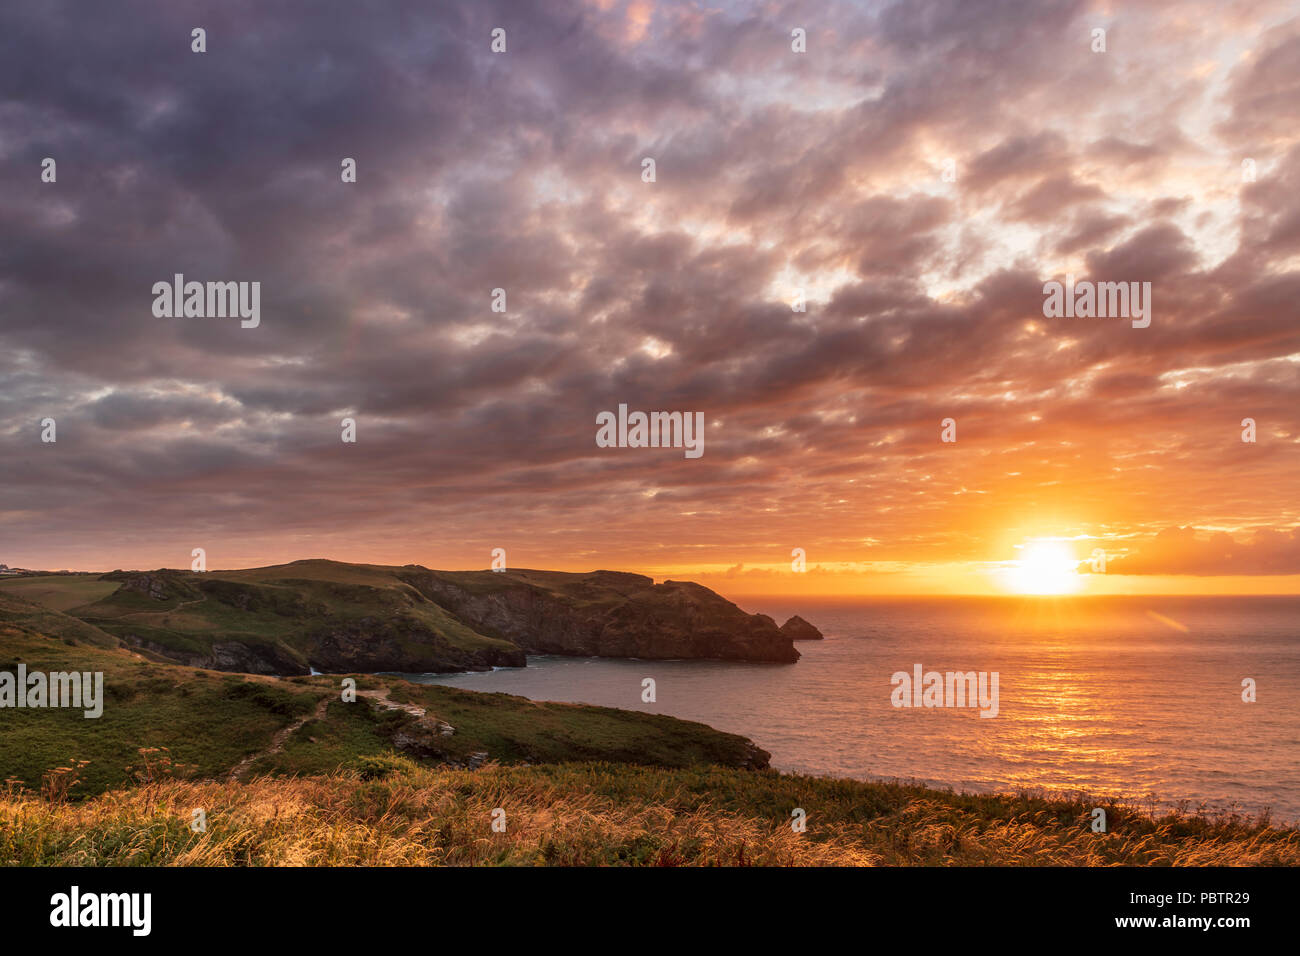 Regno Unito - Previsioni del tempo - Dopo la pioggia e forte vento, il meteo migliora durante tutta la giornata e North Cornish Coast gode di uno spettacolare tramonto sulla fascia costiera p Foto Stock